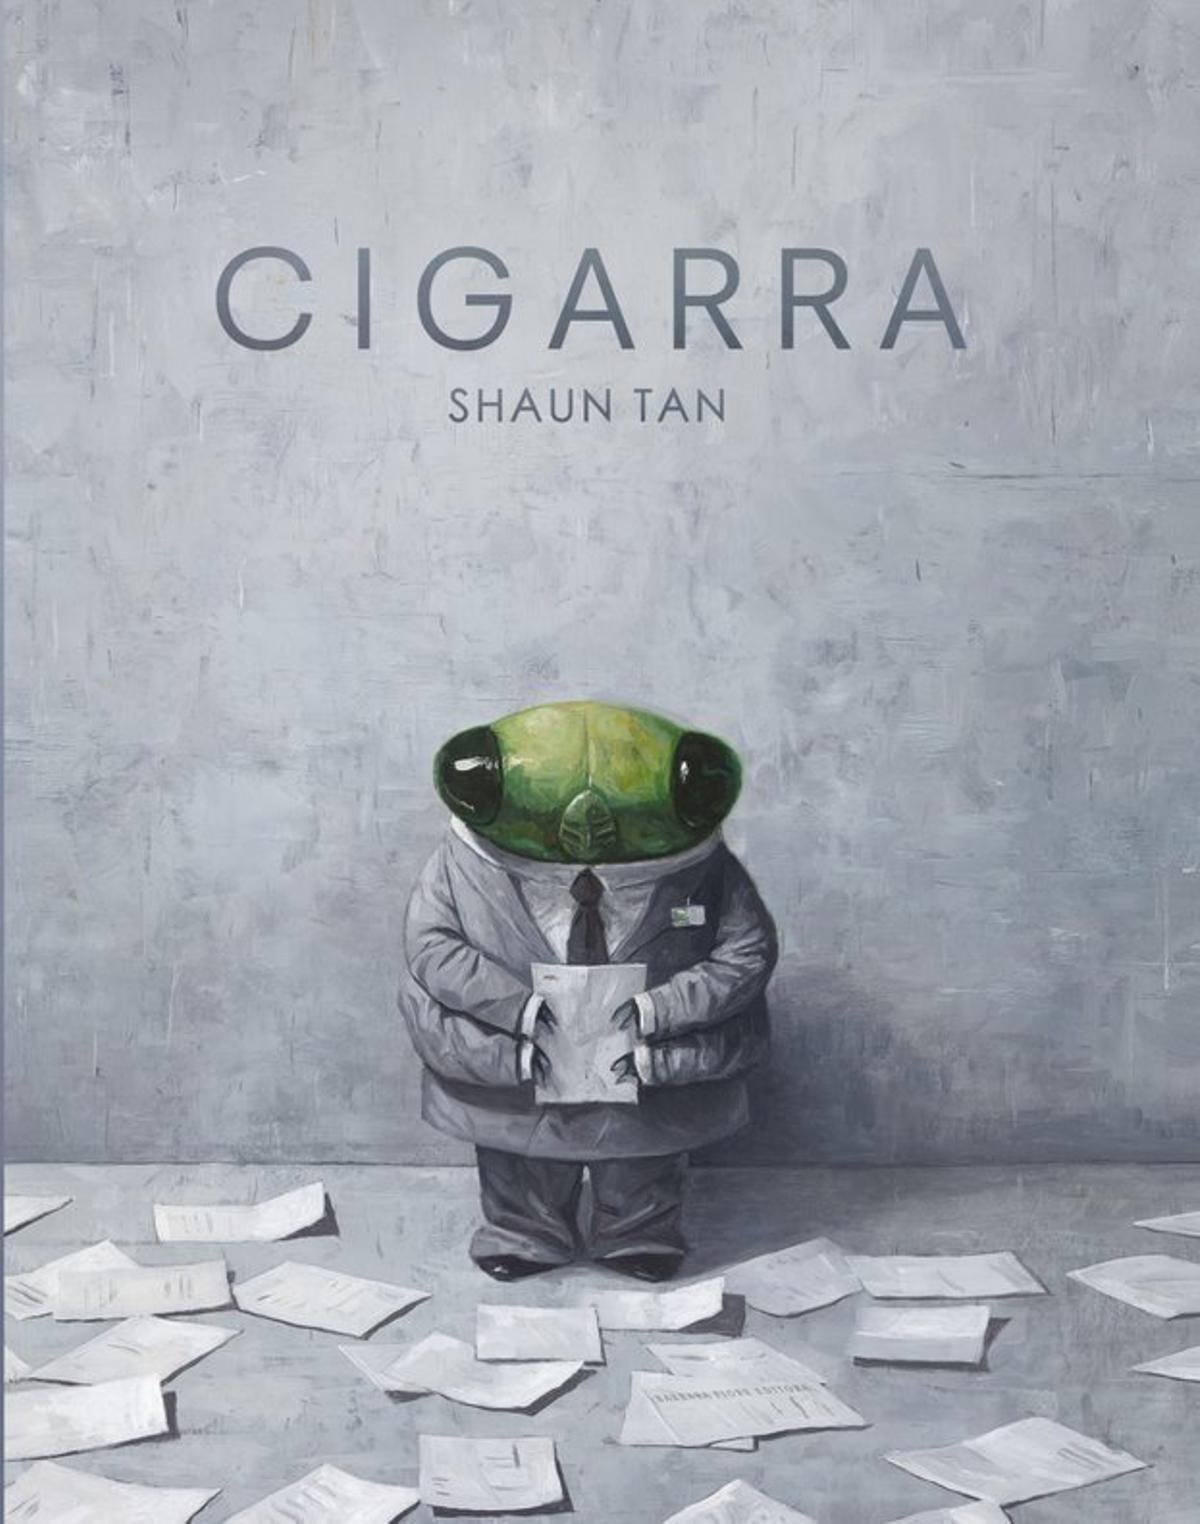 Portada del libro ilustrado ’Cigarra’, de Shaun Tan